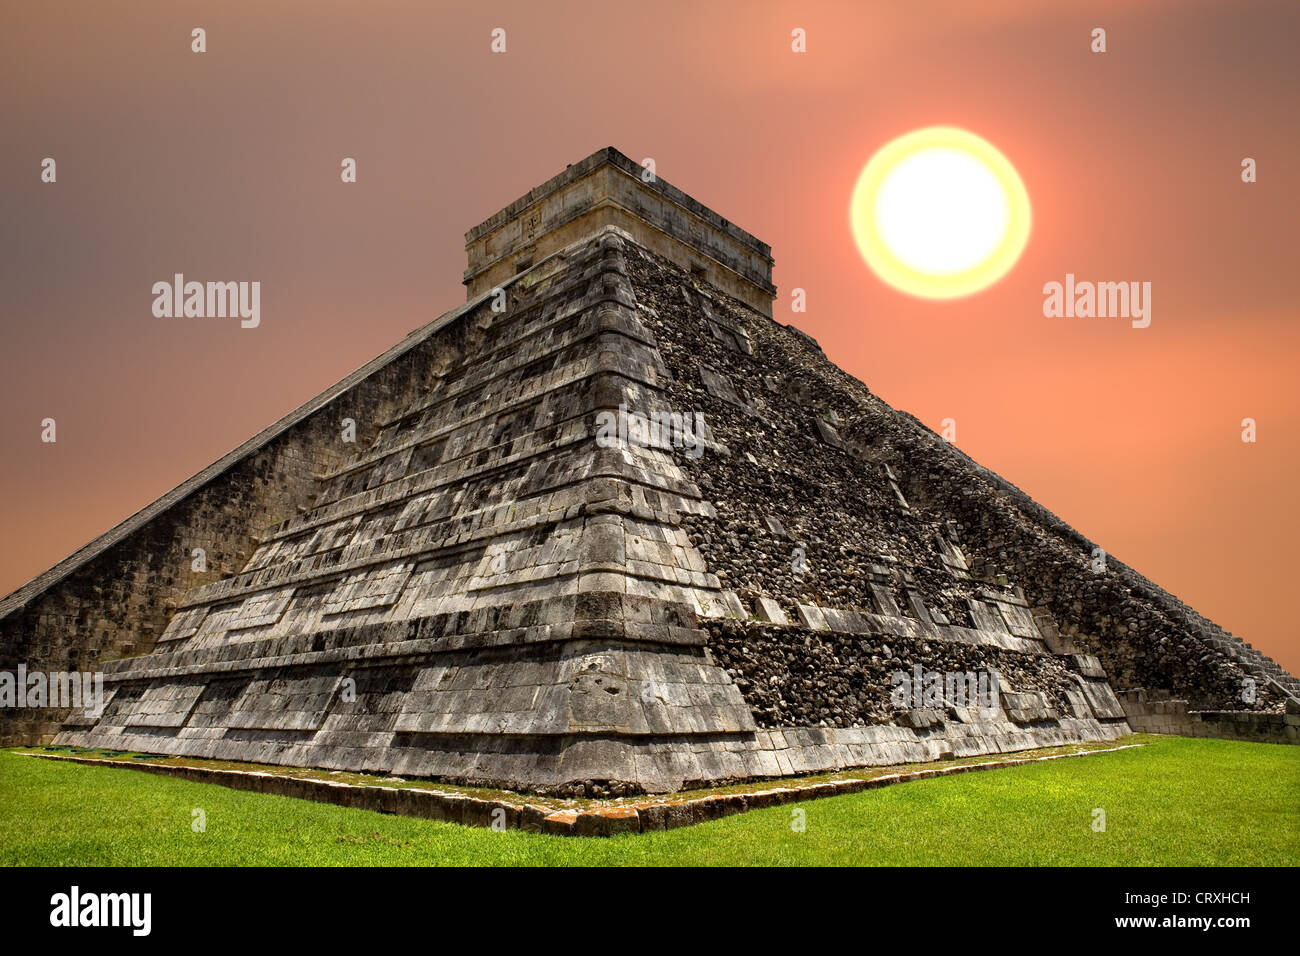 La antigua pirámide maya, el templo de Kukulcan en Chichen Itza, Yucatán, México Foto de stock